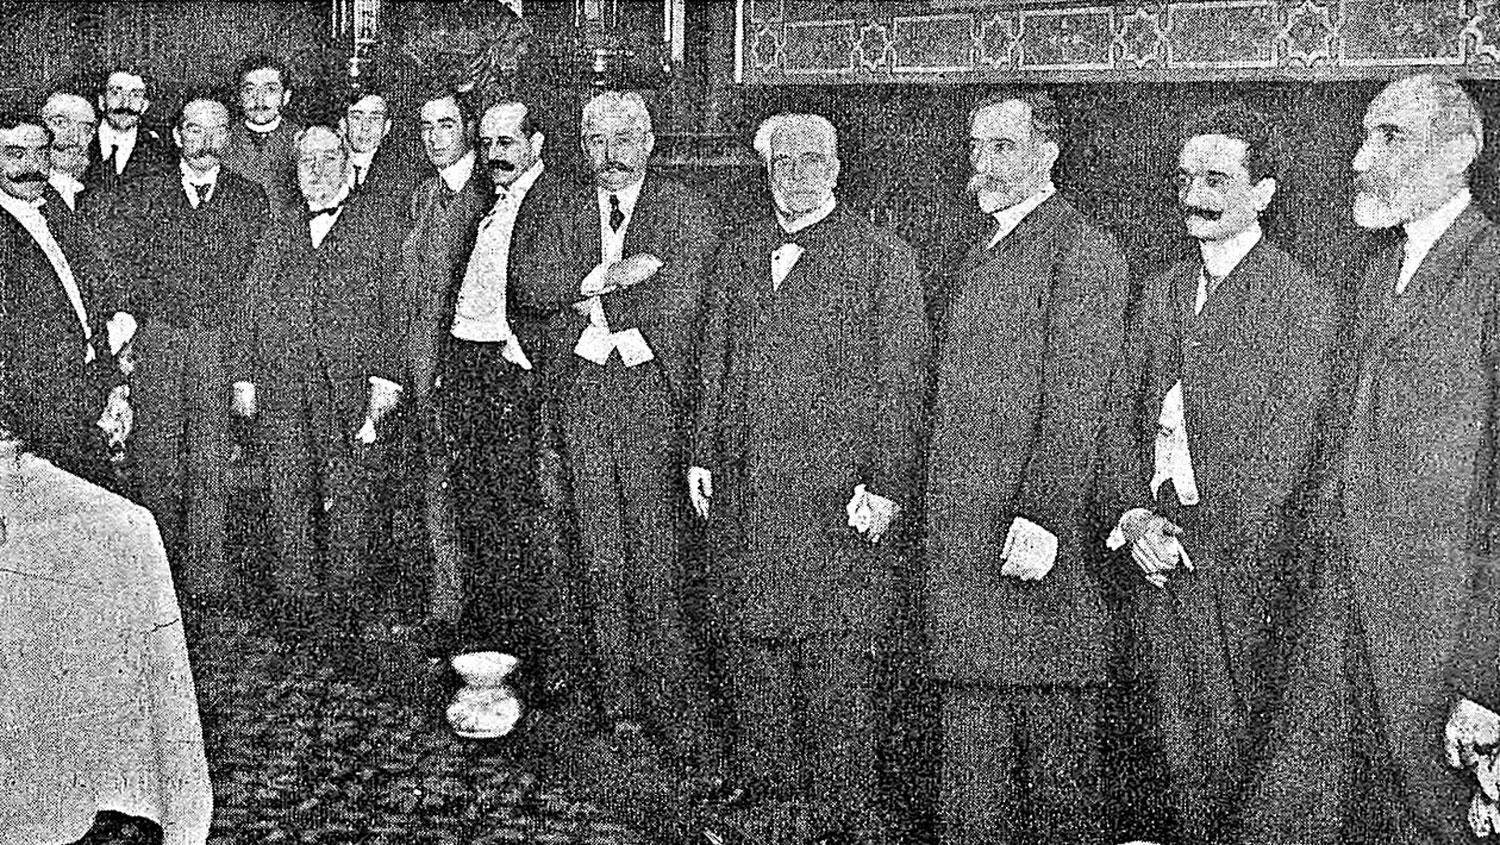 CUMPLEAÑOS DE BERNARDO DE IRIGOYEN. Desde la  izquierda, los senadores Benito Villanueva, Bernardo de Irigoyen, Manuel Mantilla, Alberto León de Soldati y Antonino Díaz. Fue el último cumpleaños de don Bernardo, en 1906.